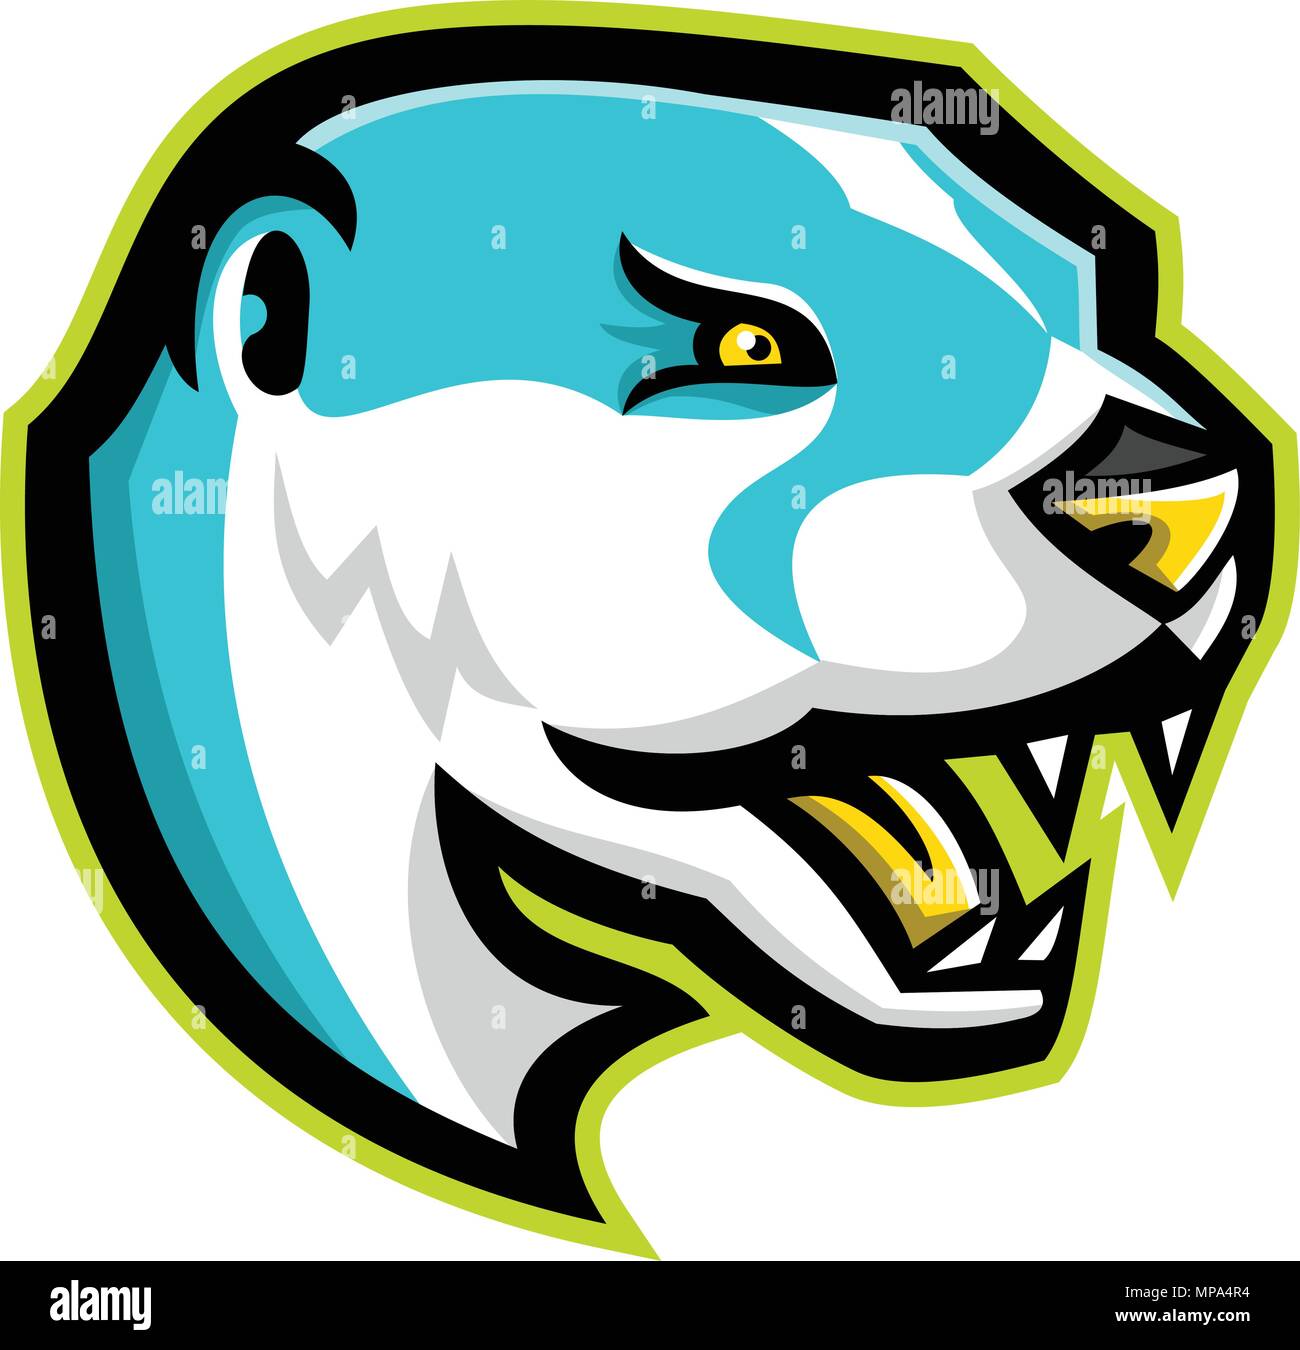 Icona di mascotte illustrazione della testa di un arrabbiato North American Lontra di fiume, la Lontra di fiume nordamericana o la lontra comune, un mammifero semiaquatic visto fro Illustrazione Vettoriale